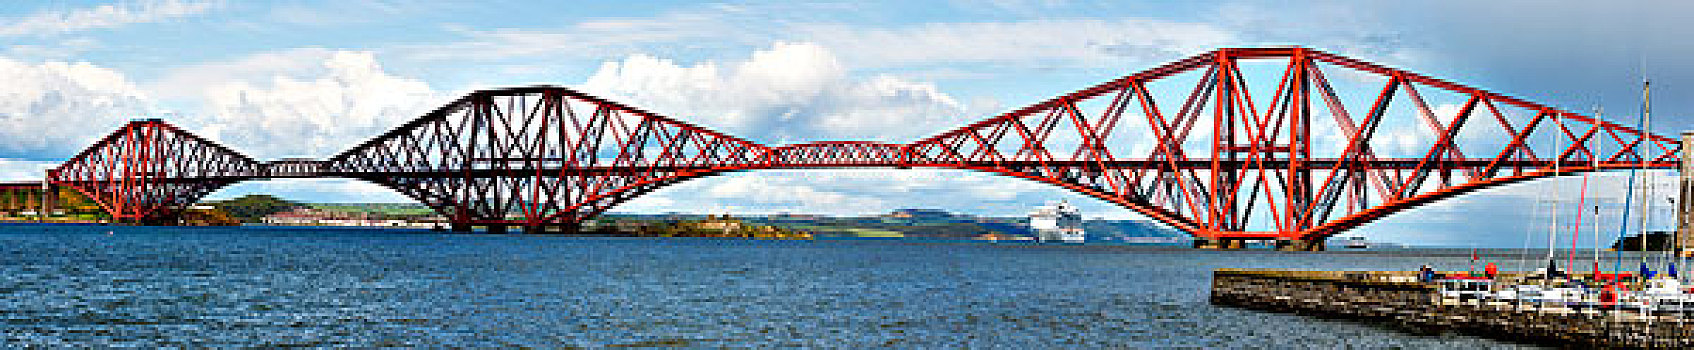 铁路桥,爱丁堡,苏格兰